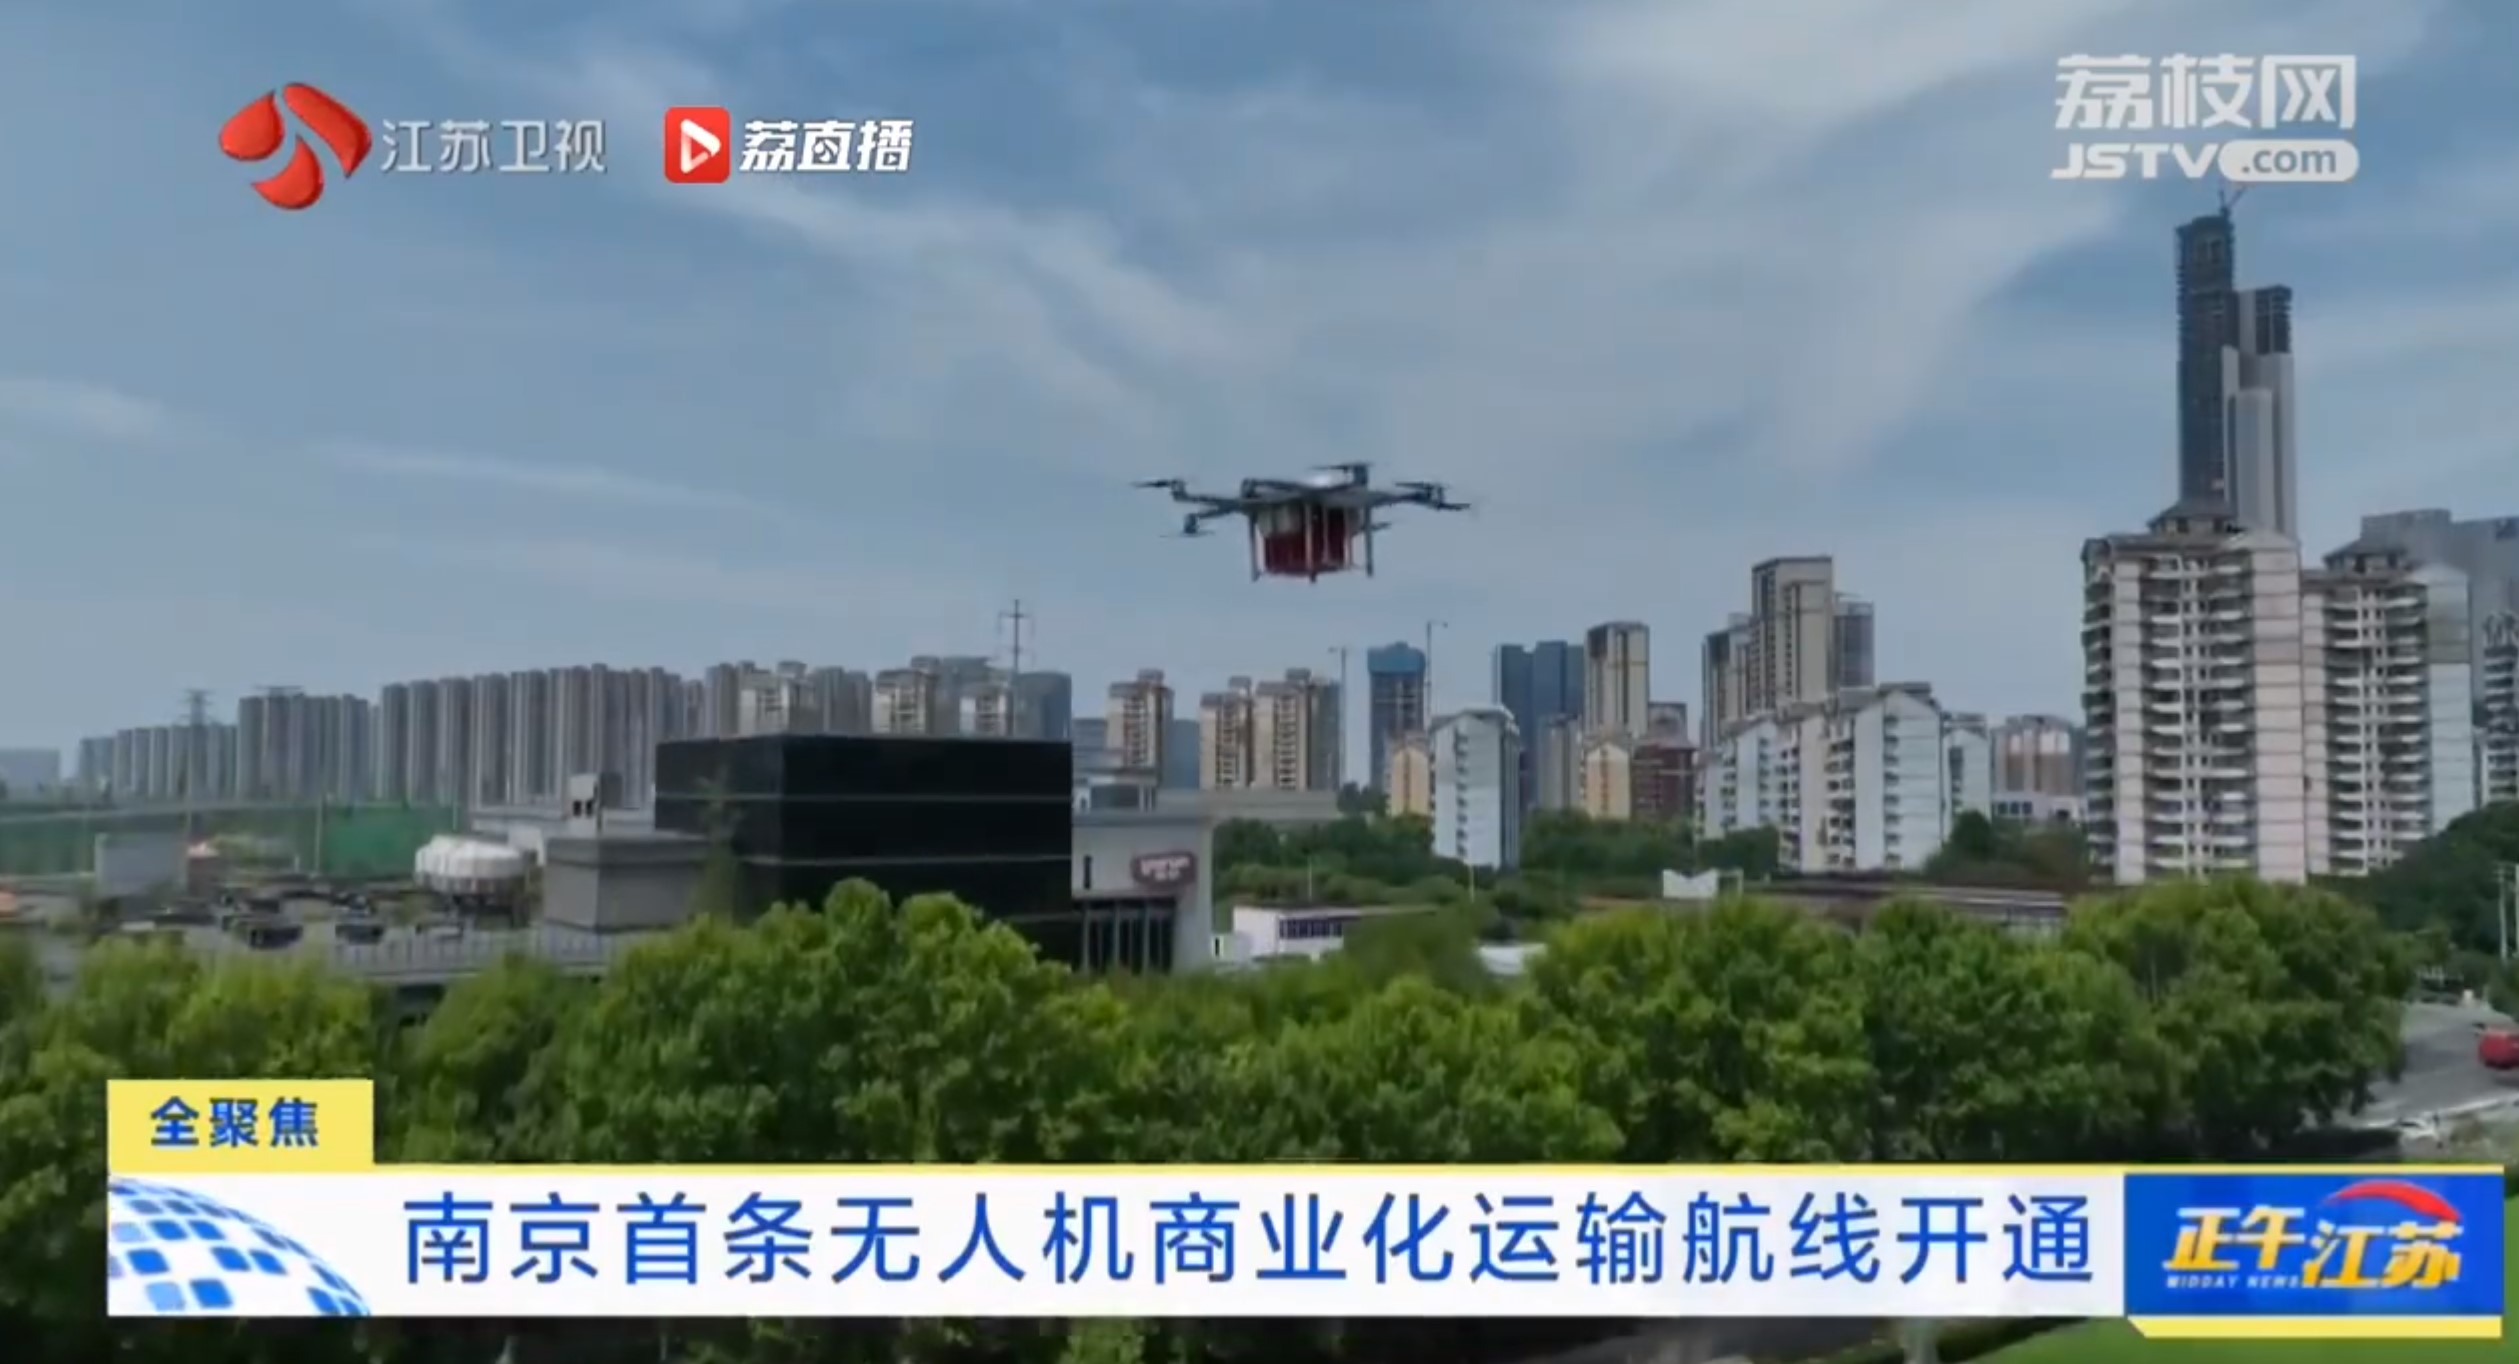 南京市首条无人机商业化运输航线正式开通